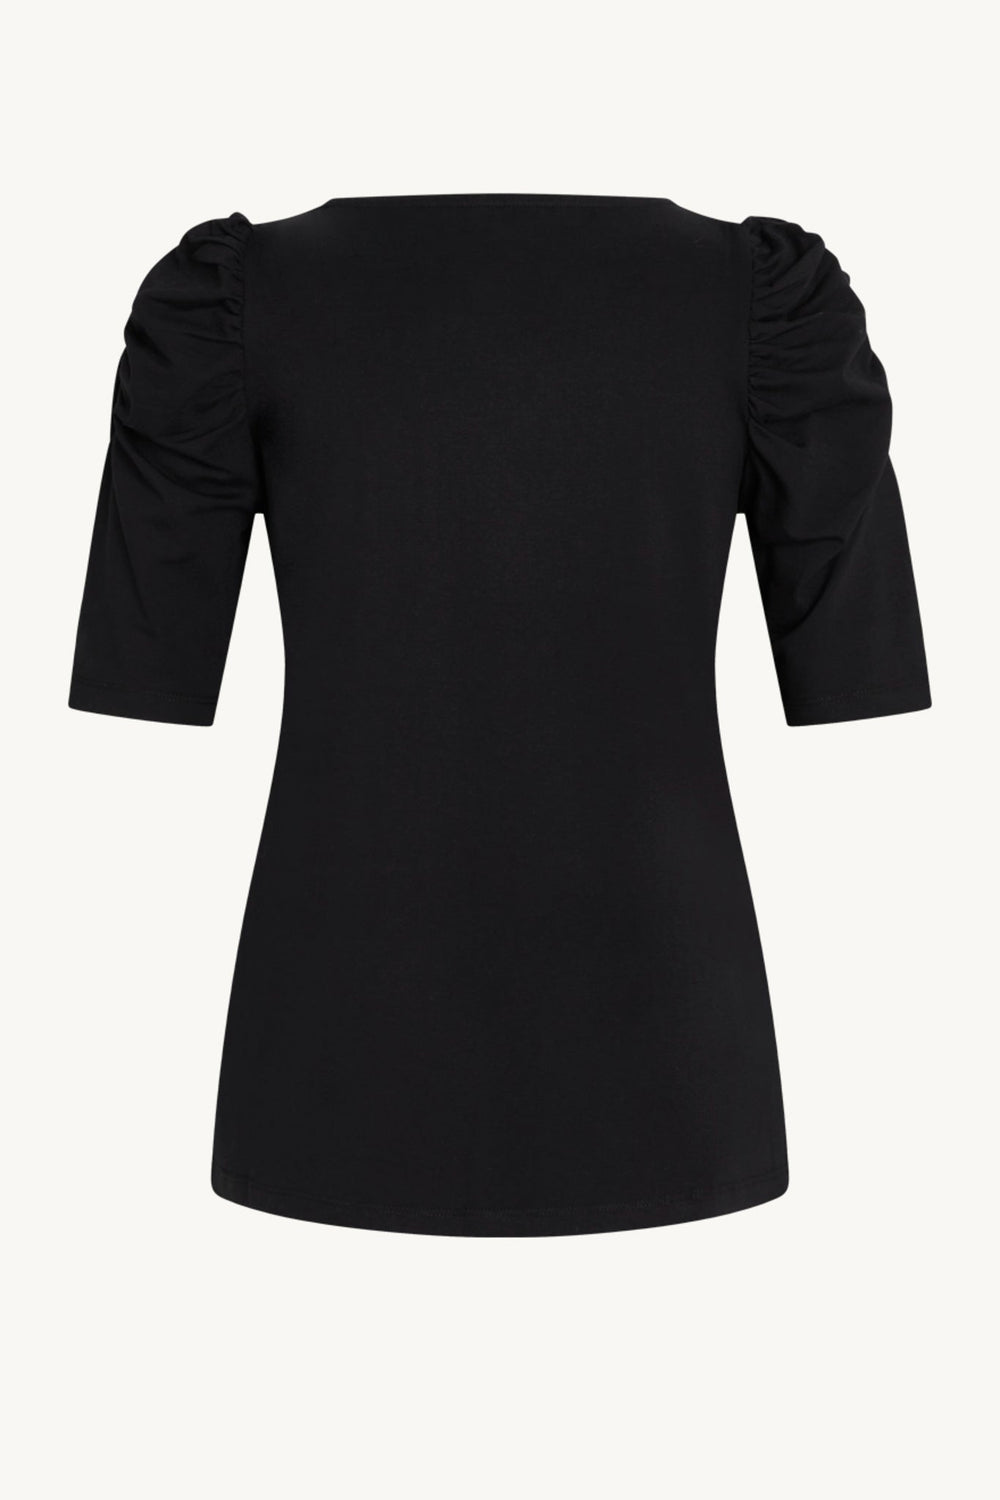 Adrienne-Cw T-Shirt Black | Skjorter og bluser | Smuk - Dameklær på nett